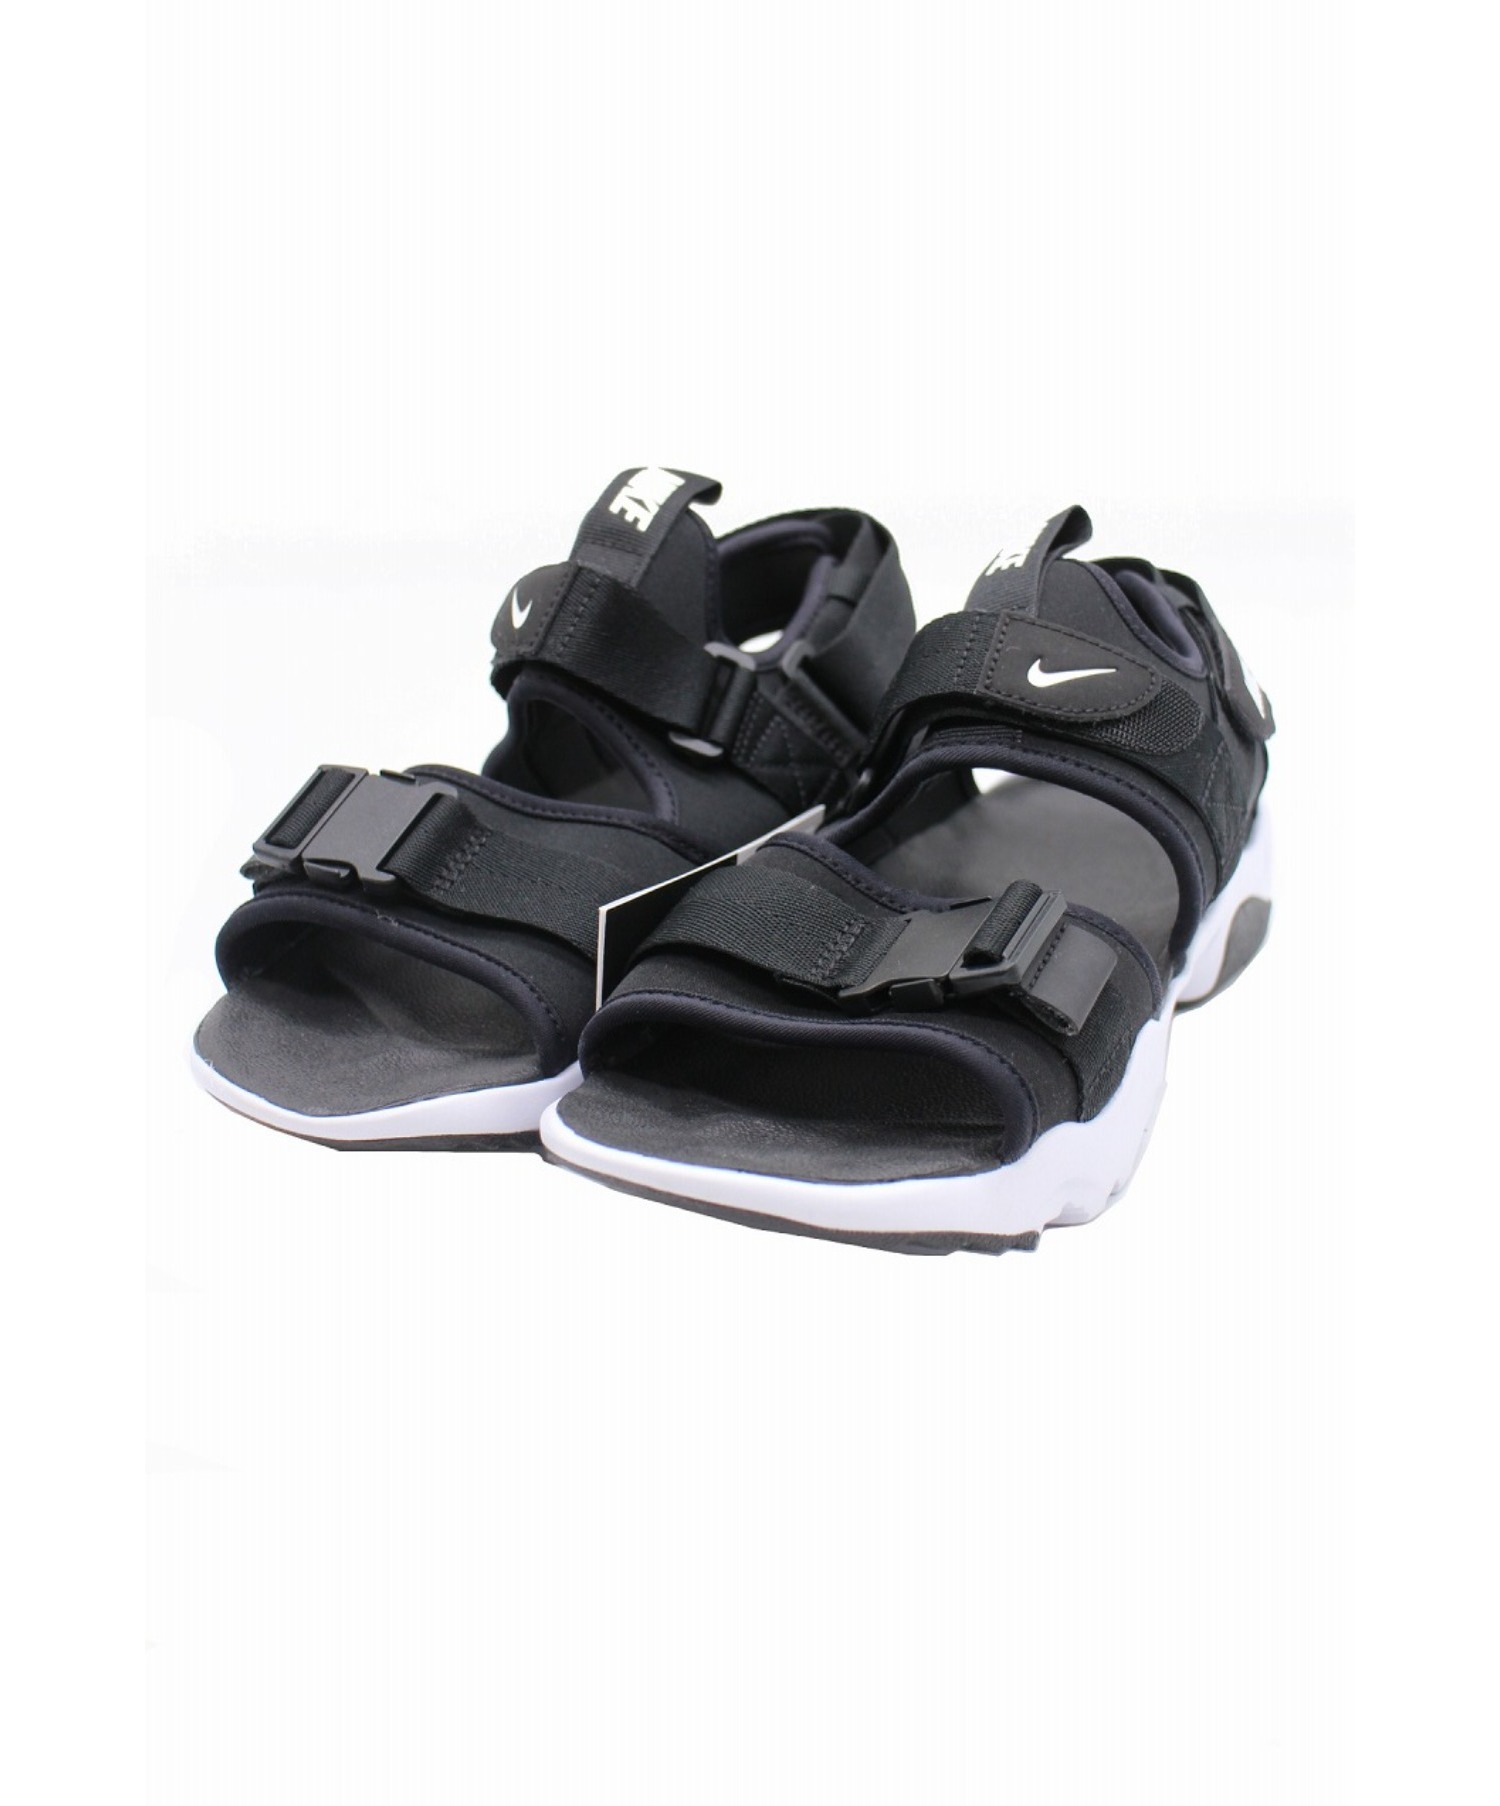 中古 古着通販 Nike ナイキ キャニオンサンダル ブラック ホワイト サイズ 26 未使用品 Cv5515 001 Wmns Canyon Sandal ブランド 古着通販 トレファク公式 Trefac Fashion